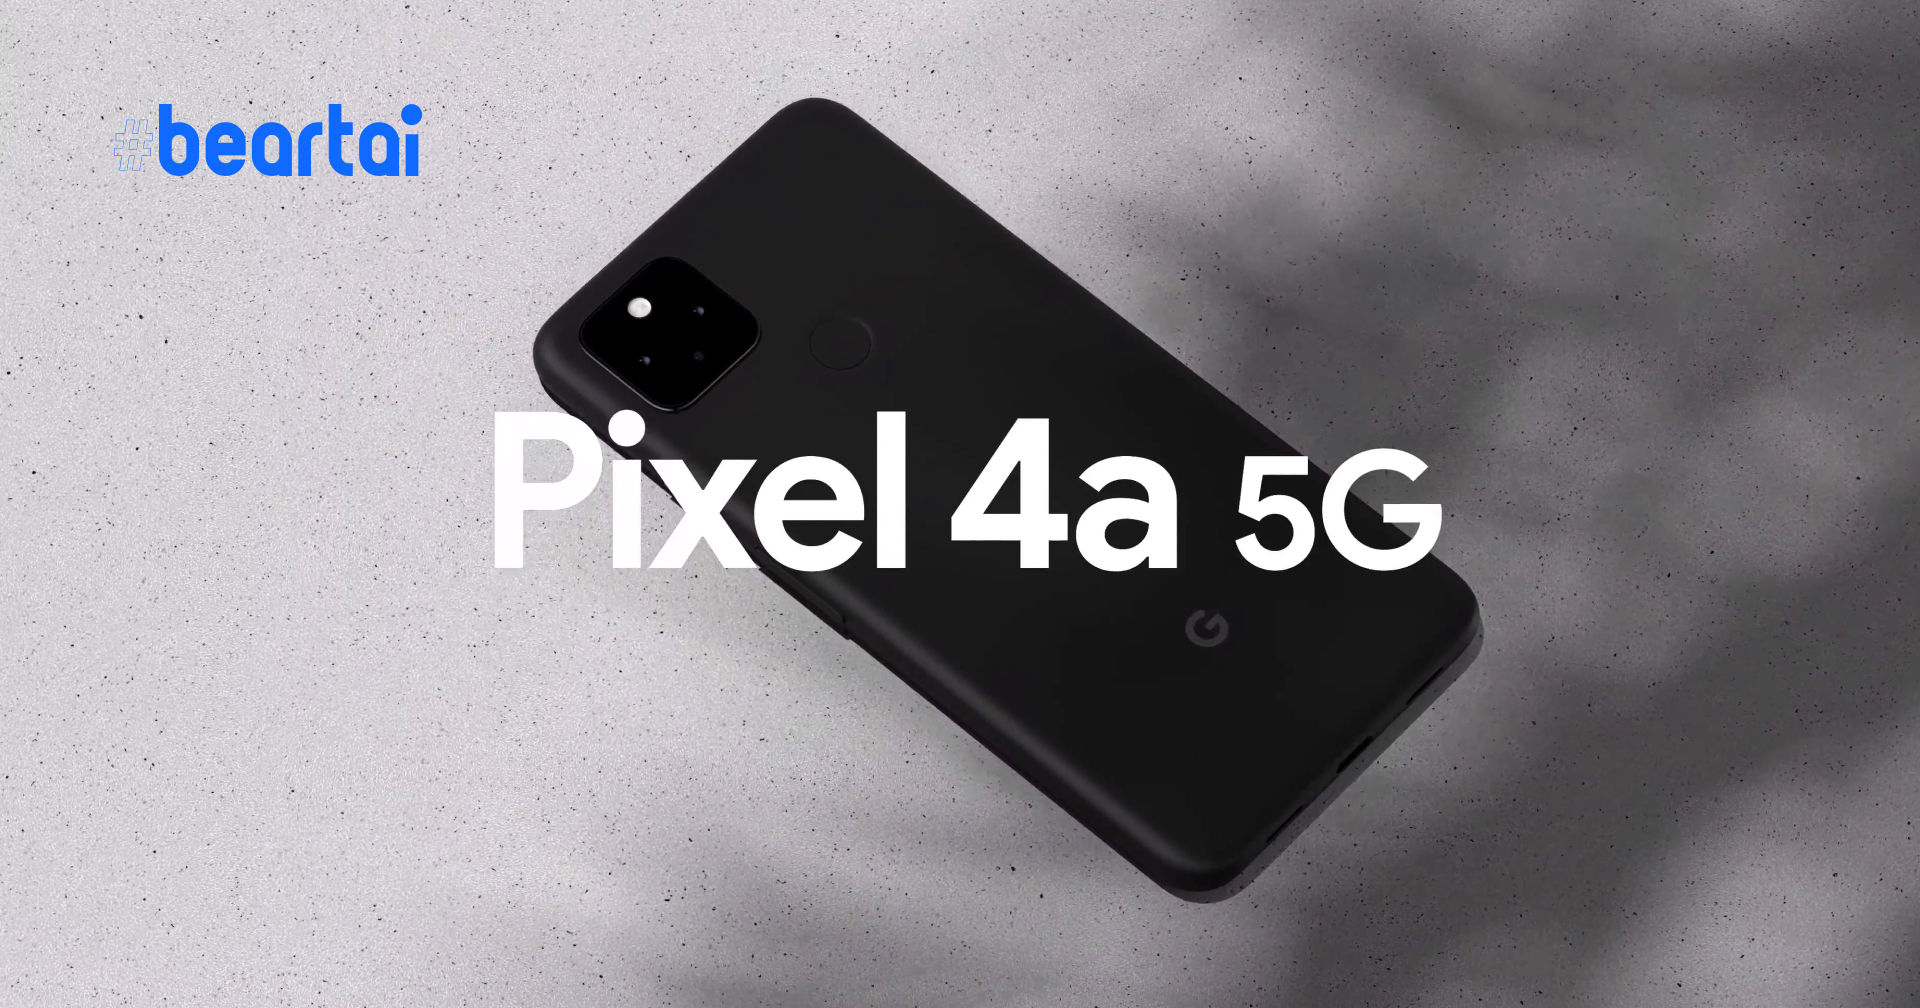 เปิดตัว Pixel 4a 5G มือถือ 5G จอใหญ่ ราคาประหยัดเริ่มต้น 15,800 บาท